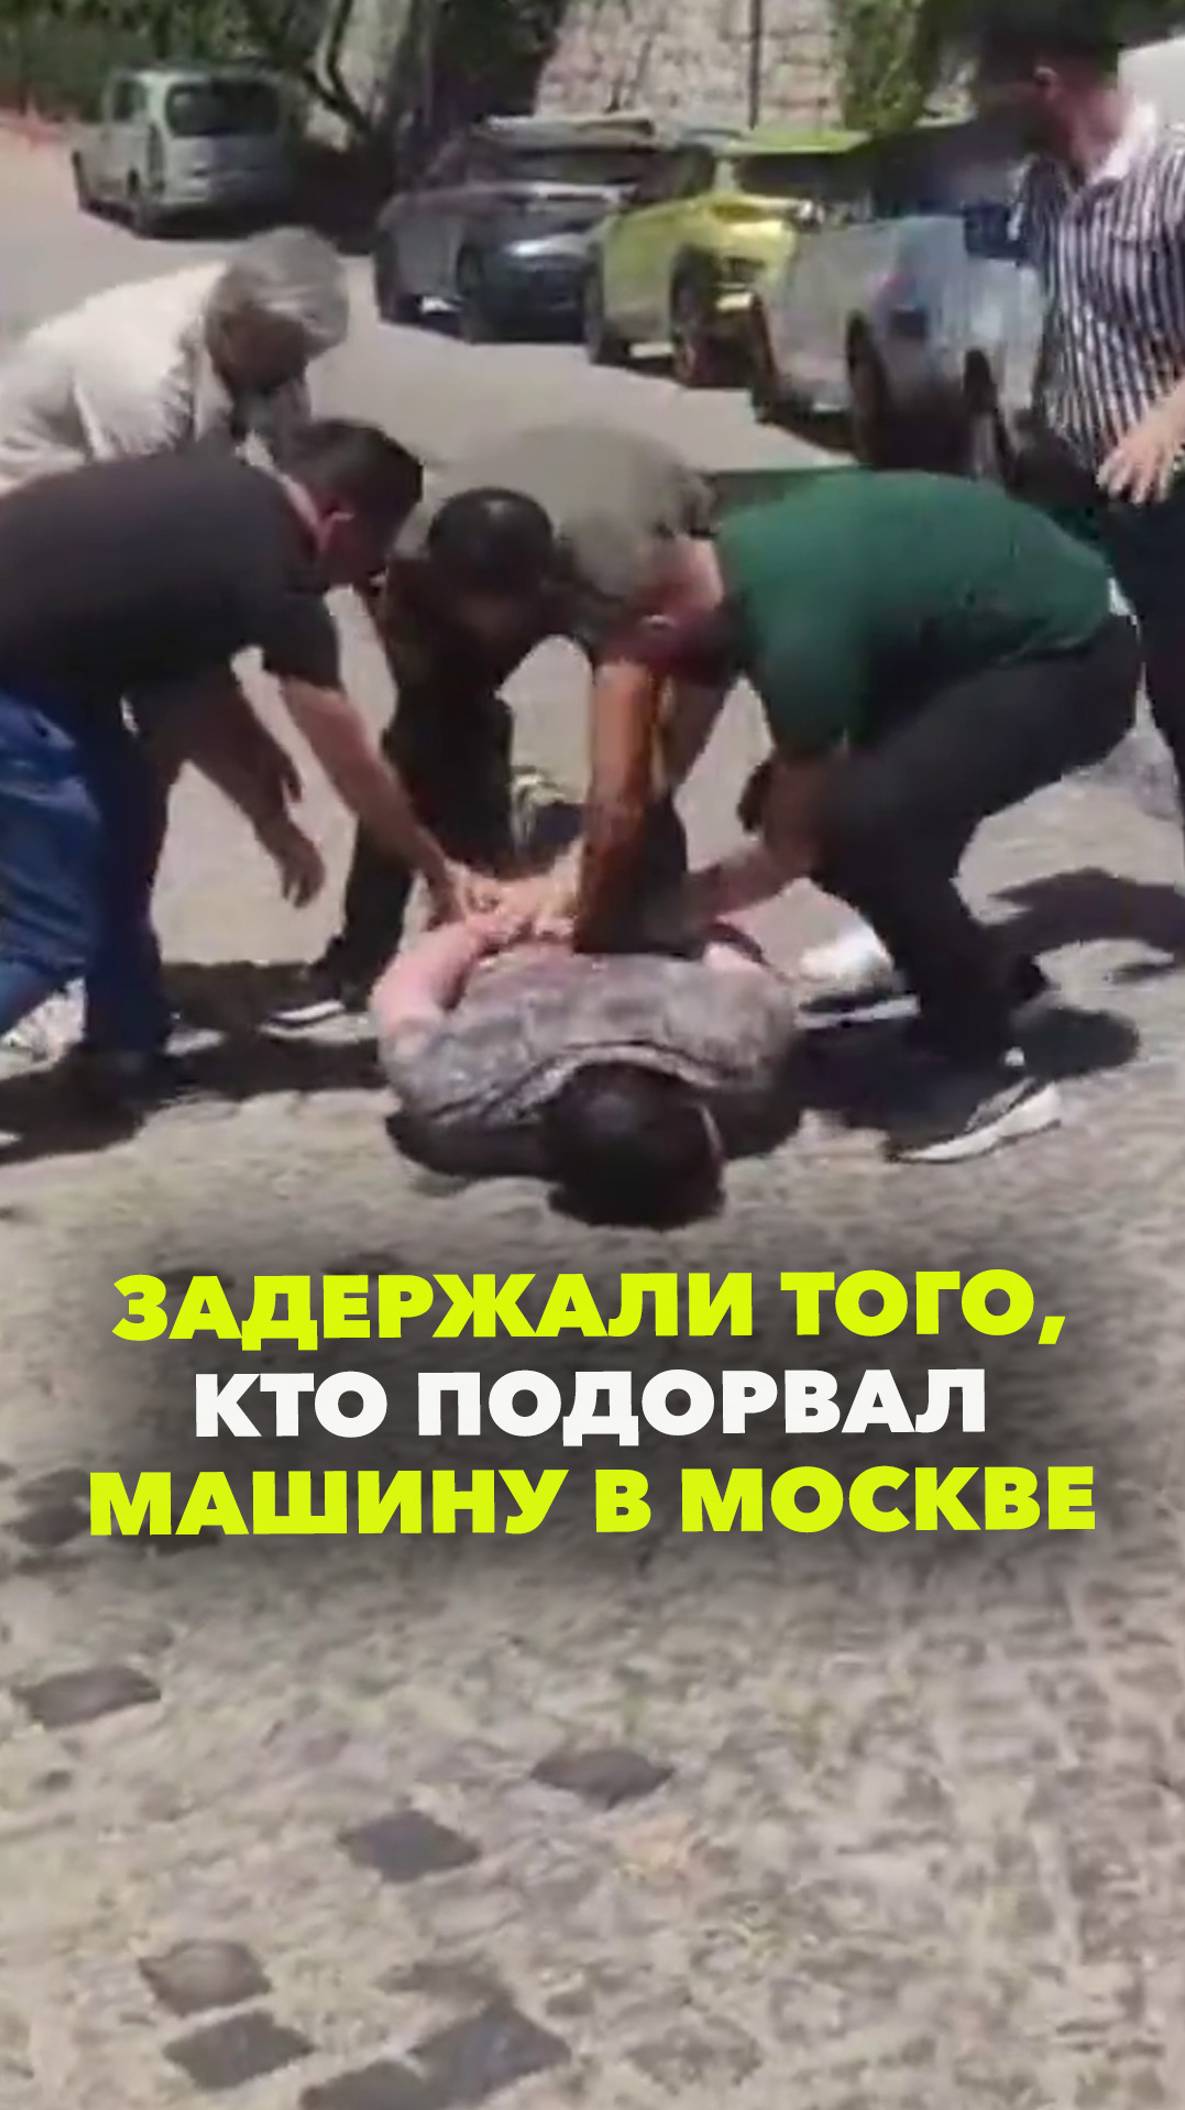 На кадрах — задержание подозреваемого в подрыве машины в Москве